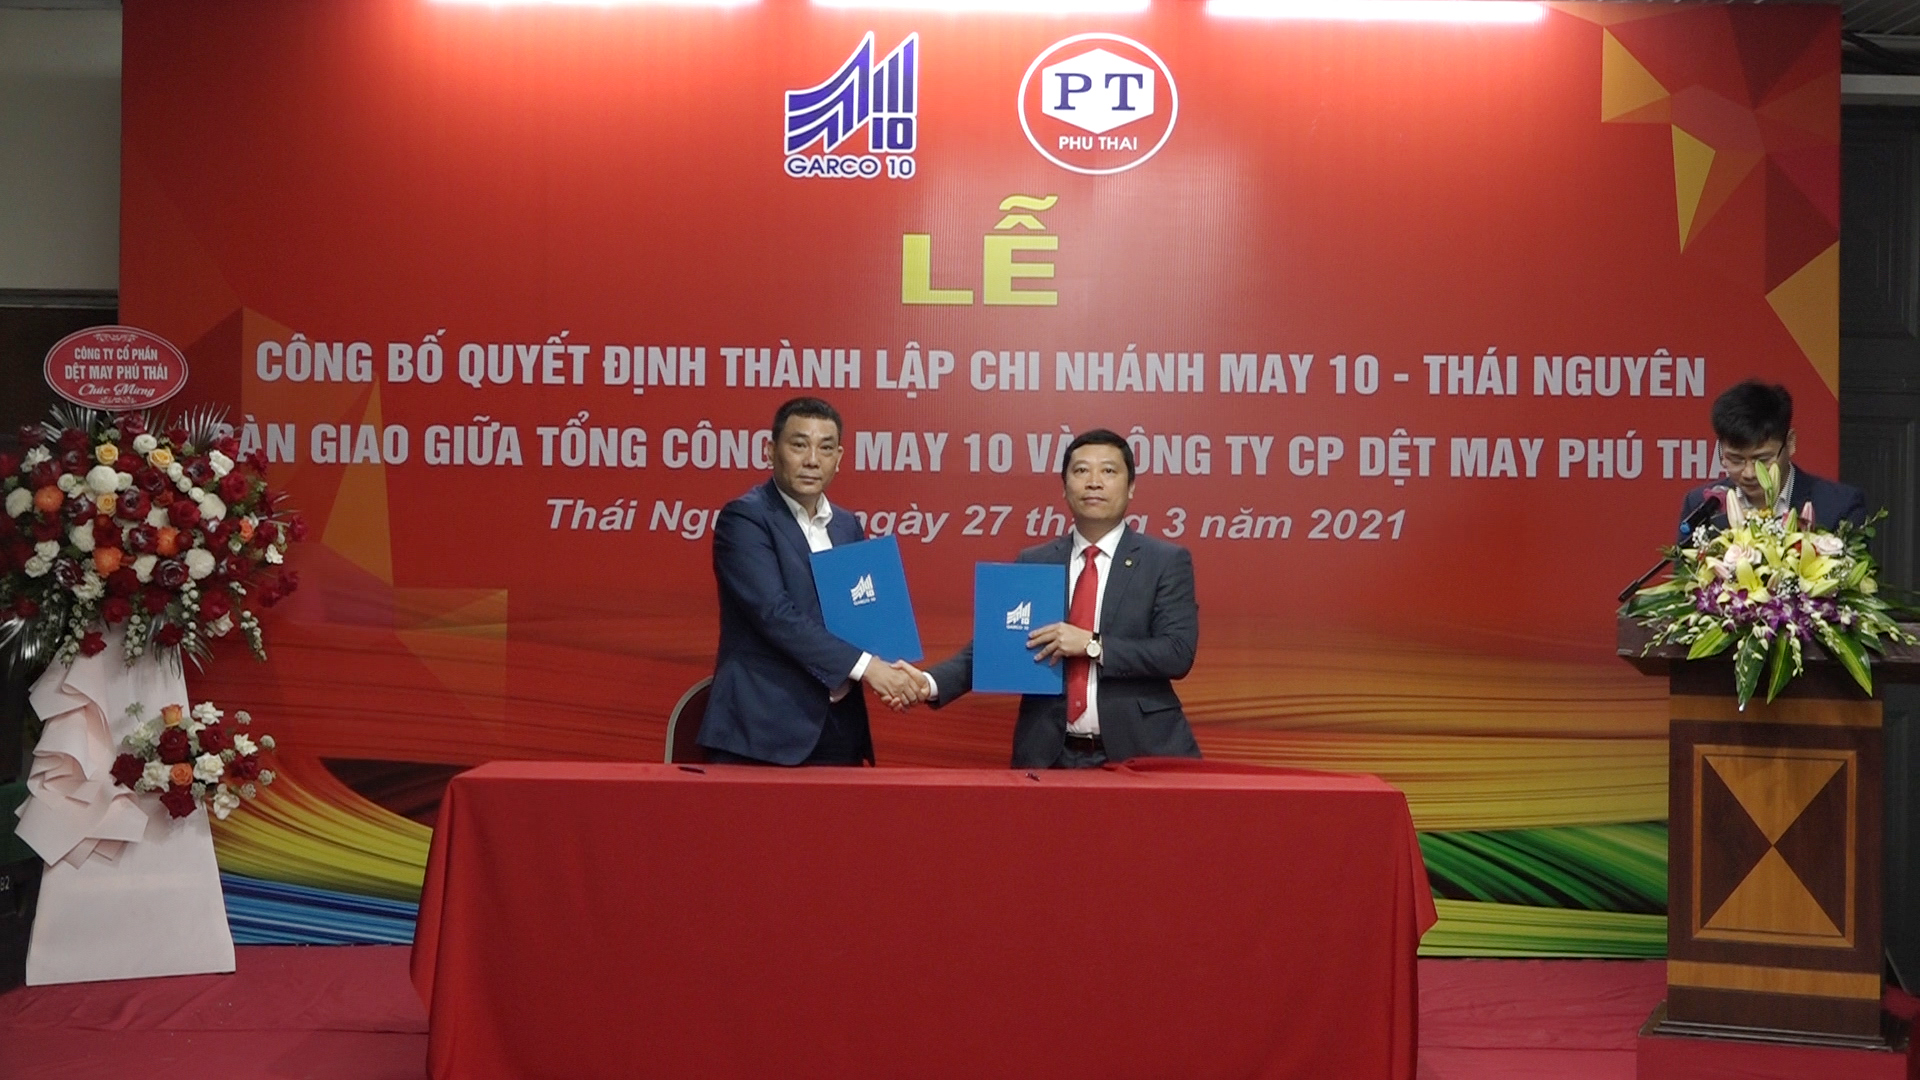 Lễ công bố quyết định thành lập chi nhánh May 10 Thái Nguyên